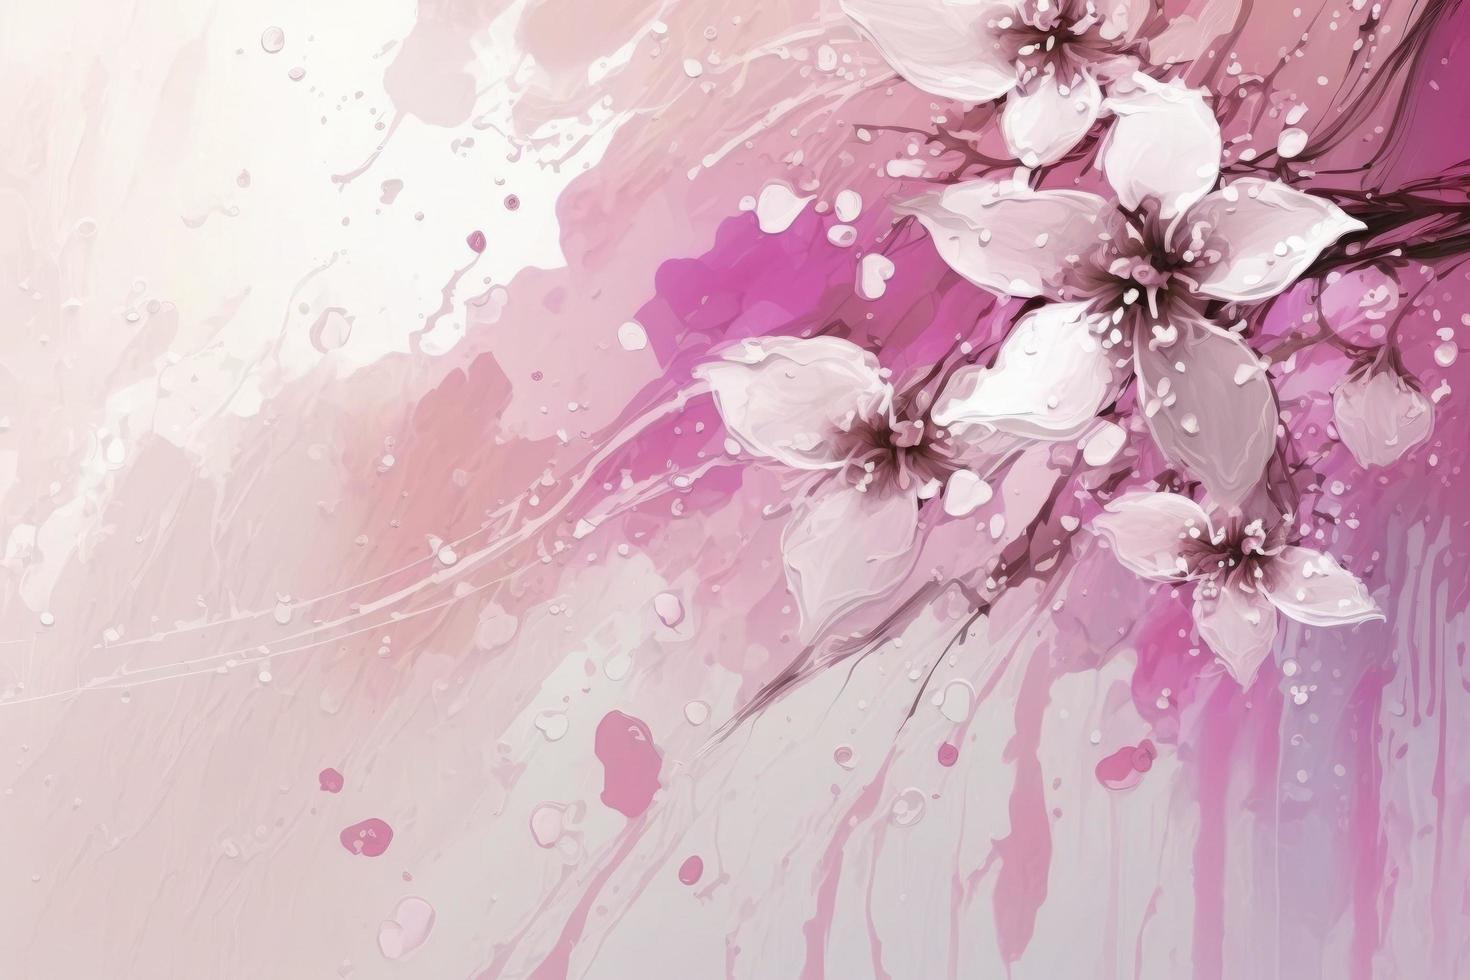 abstrakt målning tycka om körsbär blommar och jordgubb mjölk vår hand dragen bakgrund textur, kinesisk målning körsbär blomma foto